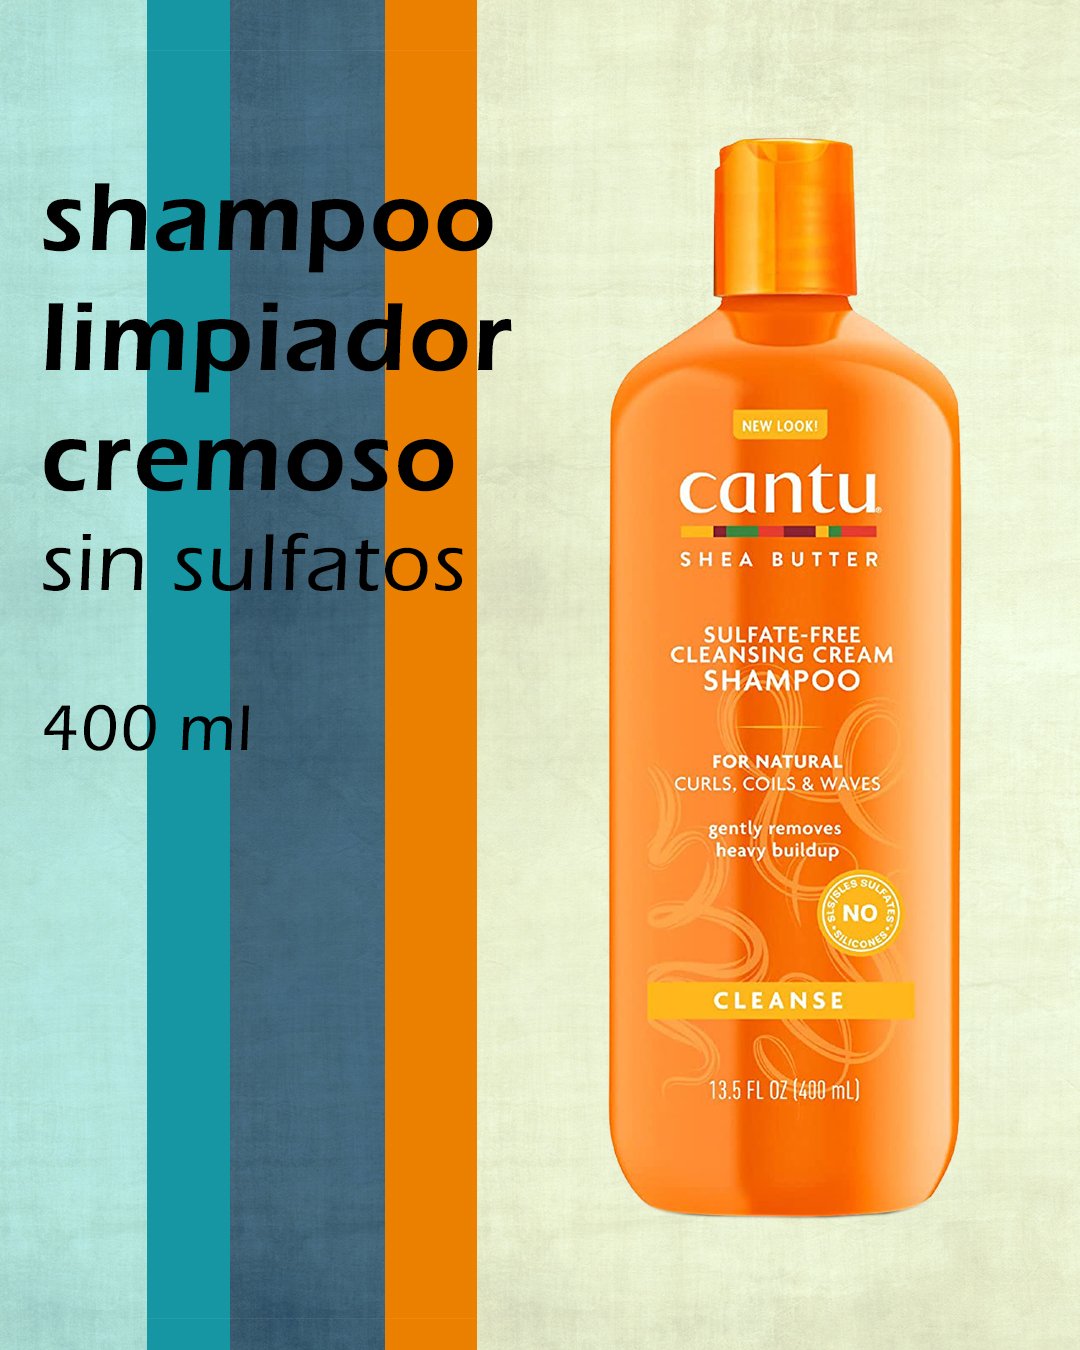 Shampoo limpiador cremoso sin sulfatos